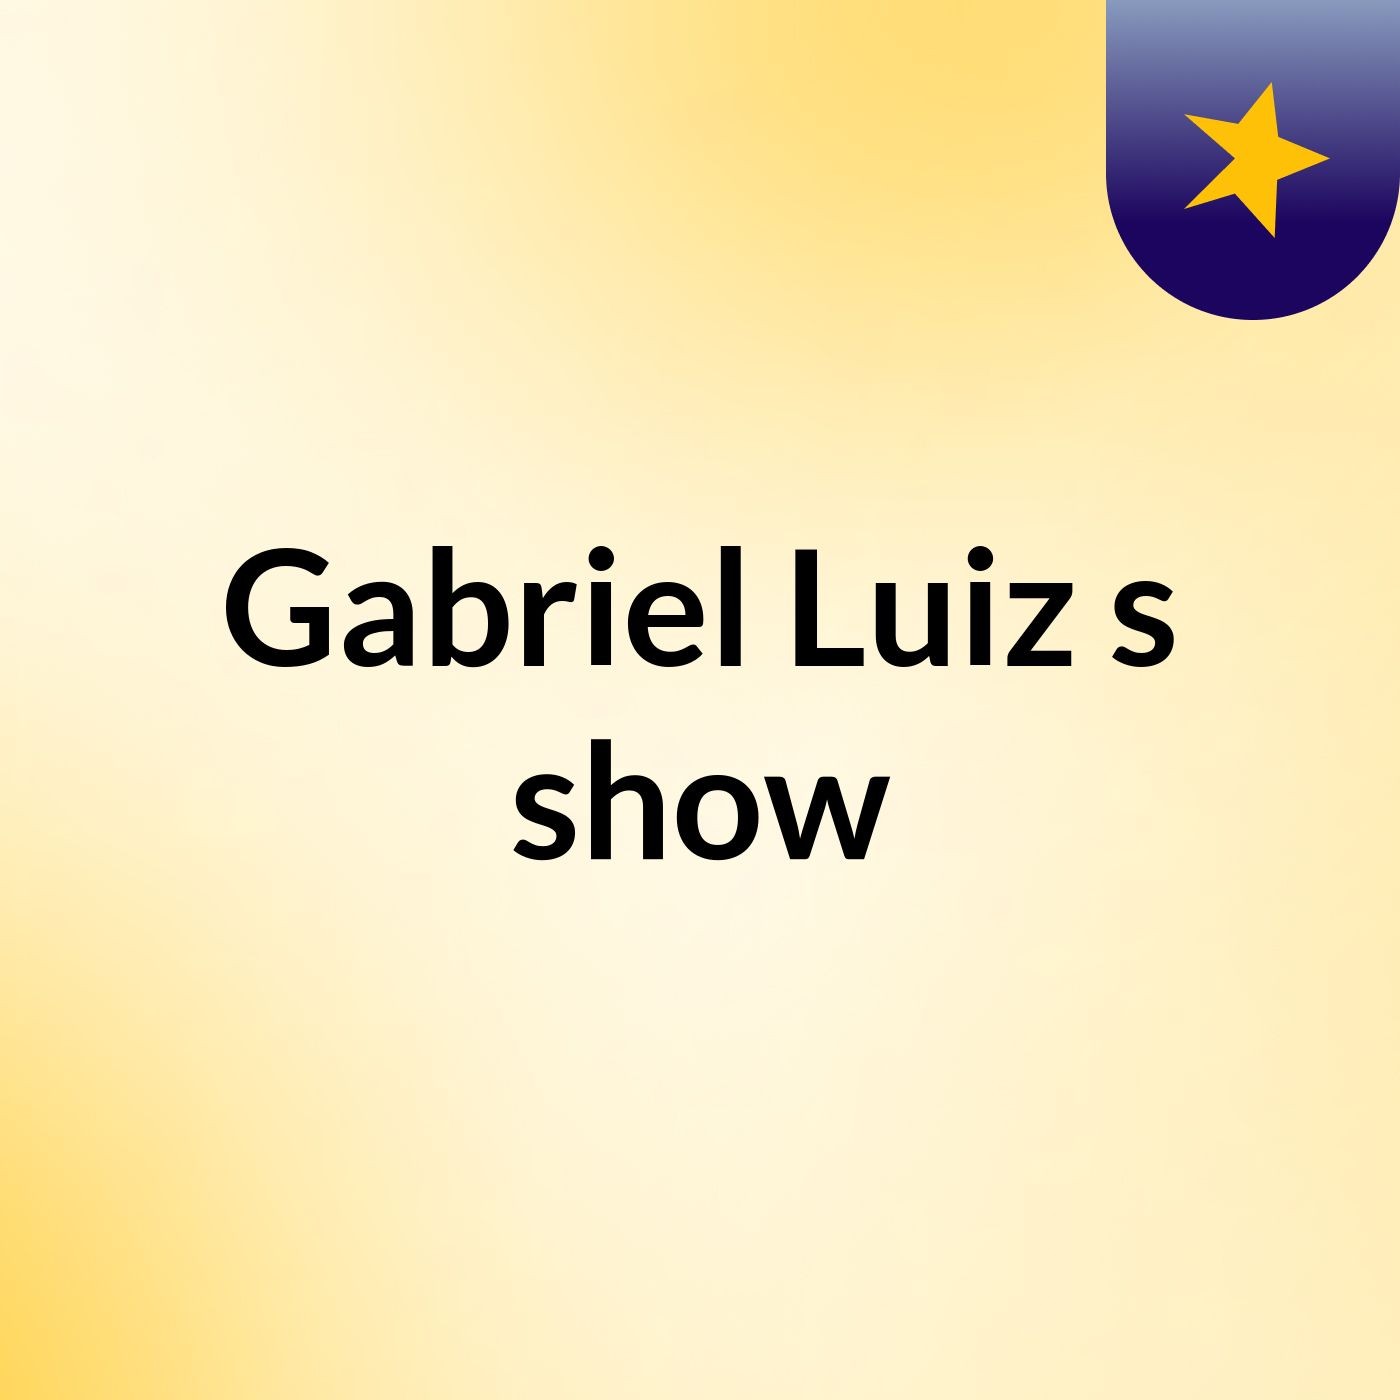 Gabriel Luiz's show